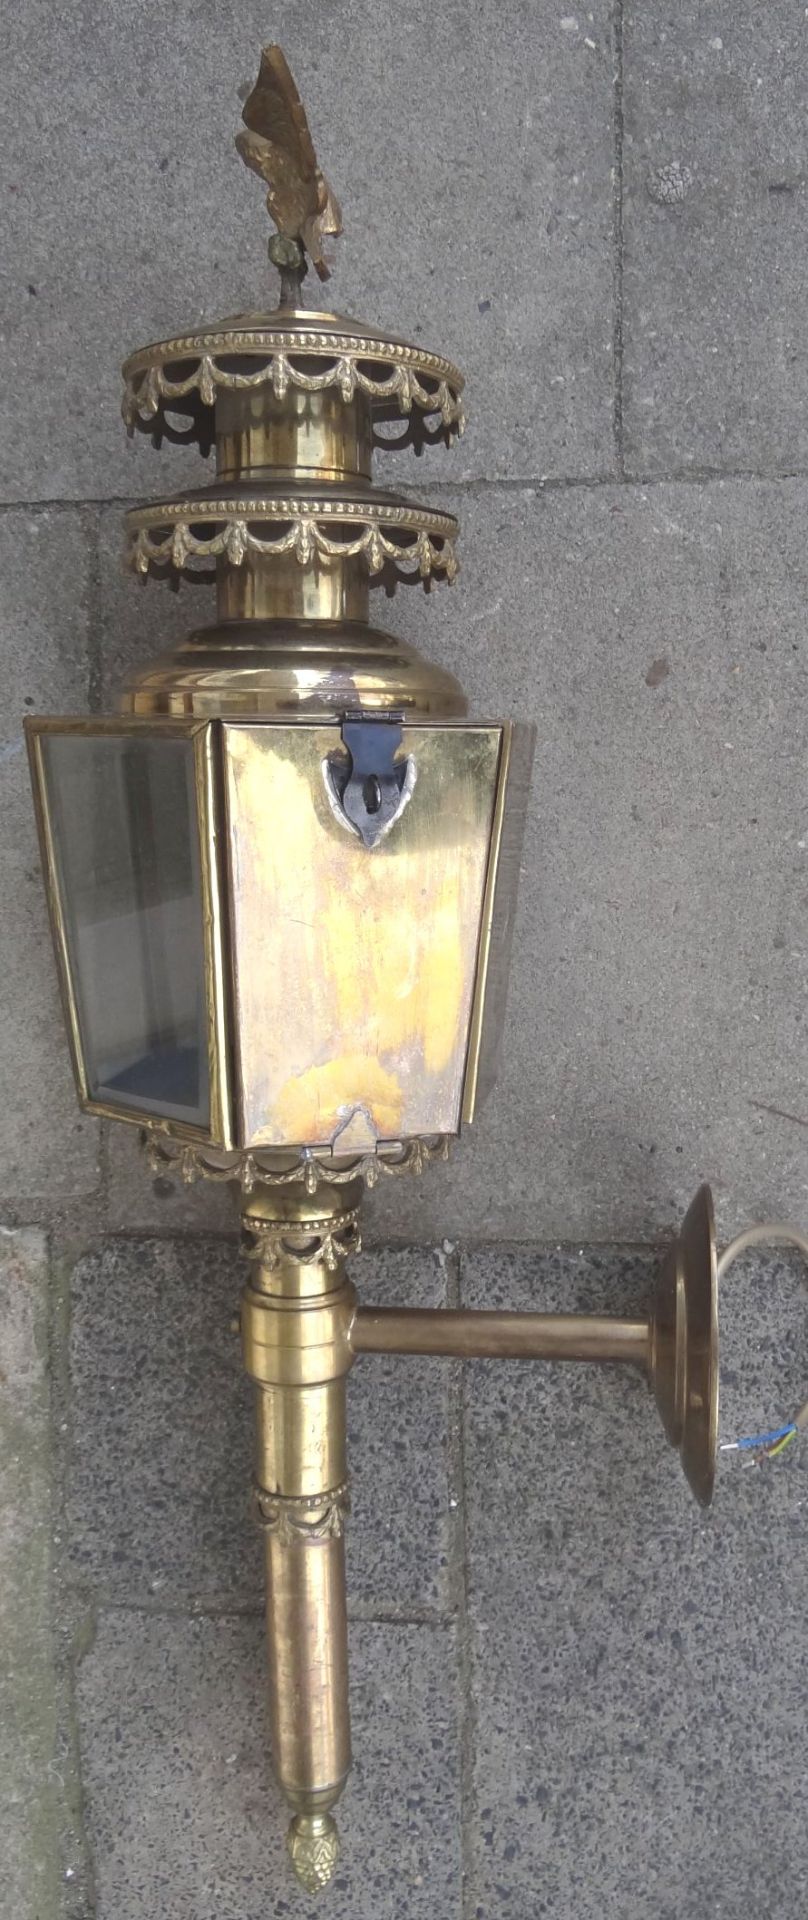 grosse, massive Kutschenlampe, Messing/Bronze, H-75 cm, B-28 cm, elektrisch, guter Zustand - Bild 4 aus 9